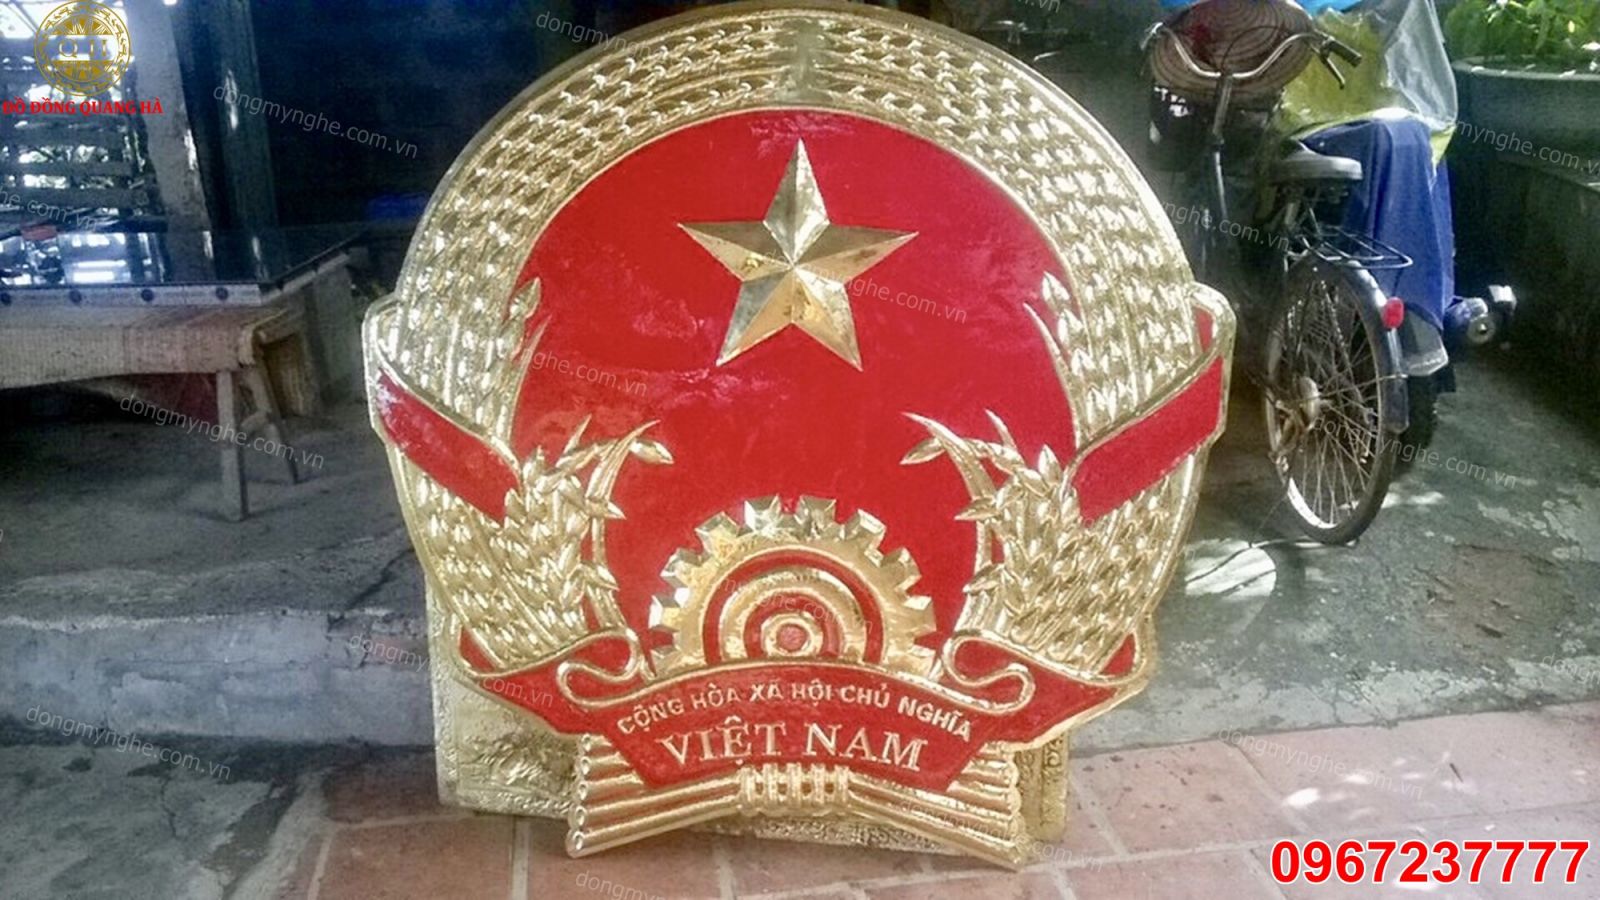 Ý nghĩa quốc huy Việt Nam rất to lớn và đáng trân trọng, từ lịch sử đến tinh thần yêu nước. Hình ảnh nó sẽ giúp bạn hiểu rõ hơn về giá trị của biểu tượng quốc gia và đẩy một bước nữa trong việc trân trọng tổ quốc.